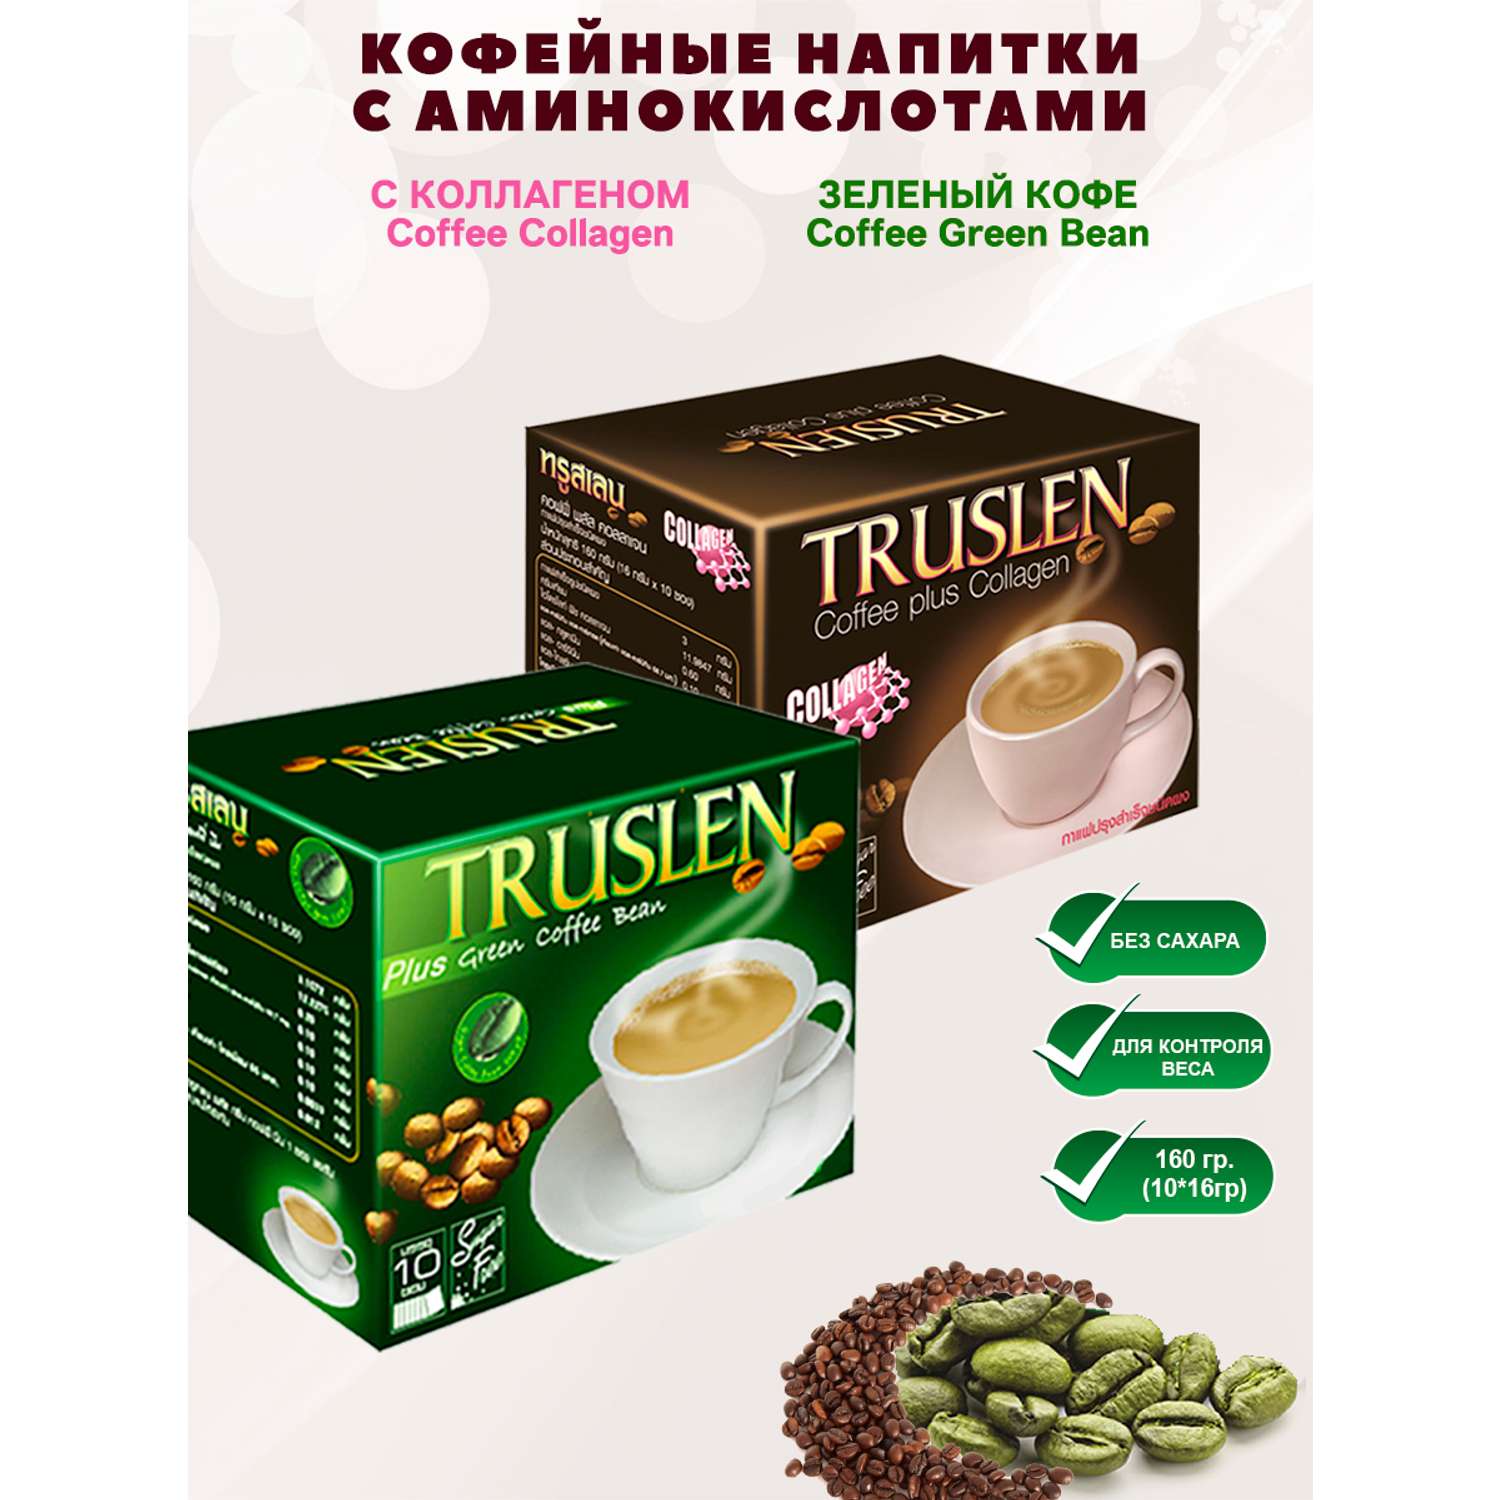 Кофе для похудения Truslen c Коллагеном без сахара и Зелёный - фото 1